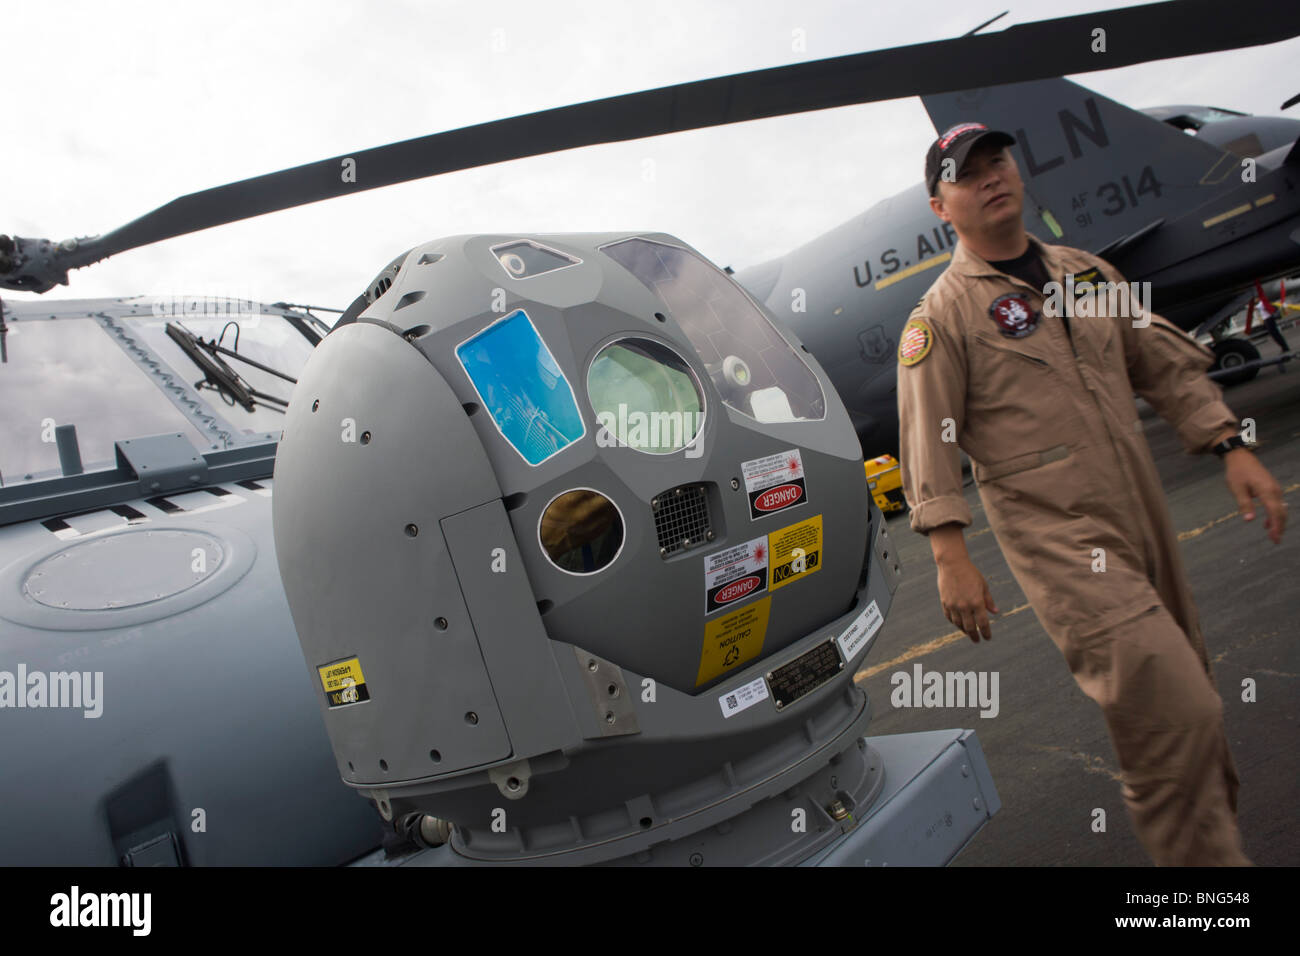 US Navy Piloten und Infrarot-Wärmebildkamera auf Nase von einem Sikorsky MH-60R Hubschrauber auf der Farnborough Airshow. Stockfoto